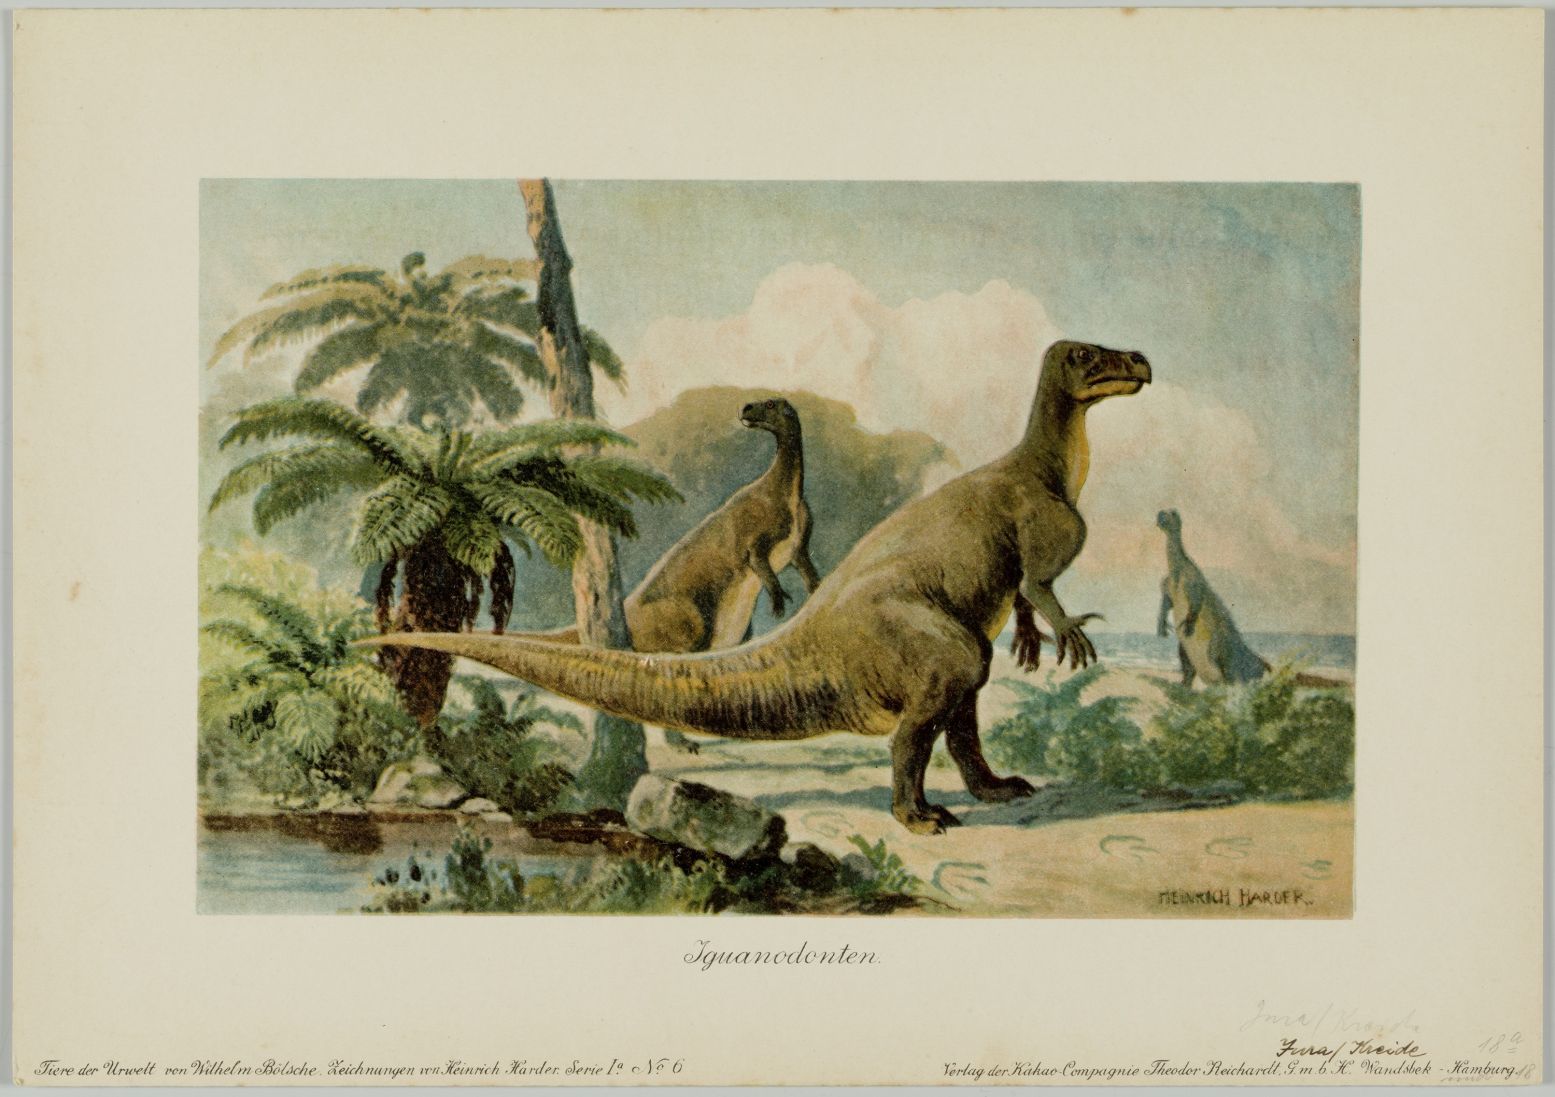 Heinrich Harder, Diplodocus, ca. 1916, chromolithografie. Verzamelkaart uit Wilhelm Boelsche, Tiere der Urwelt. Collectie Chris Manias, Londen.